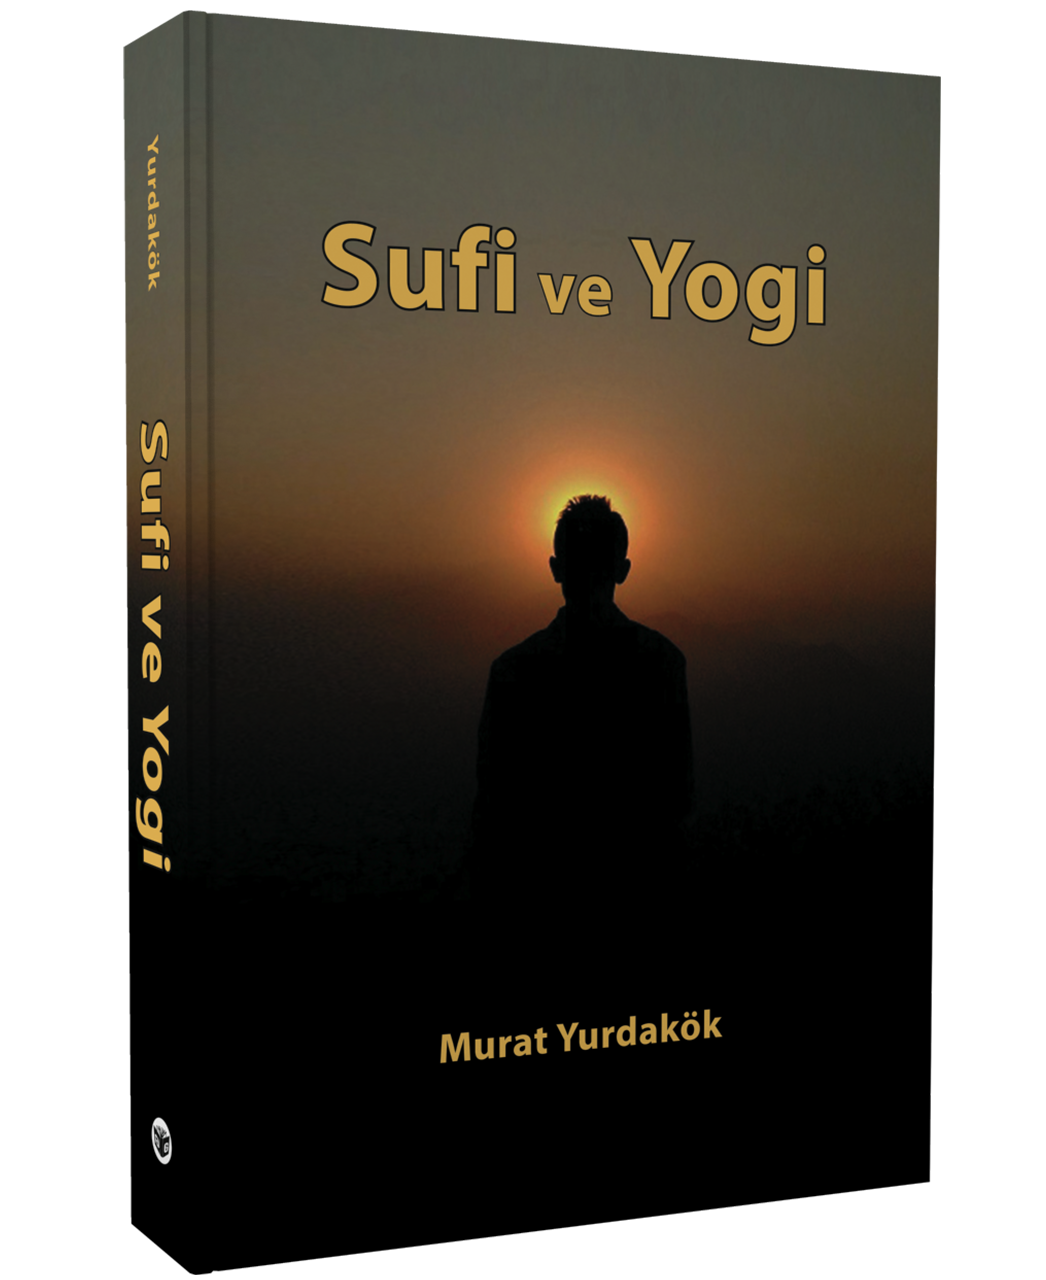 Sufi ve Yogi